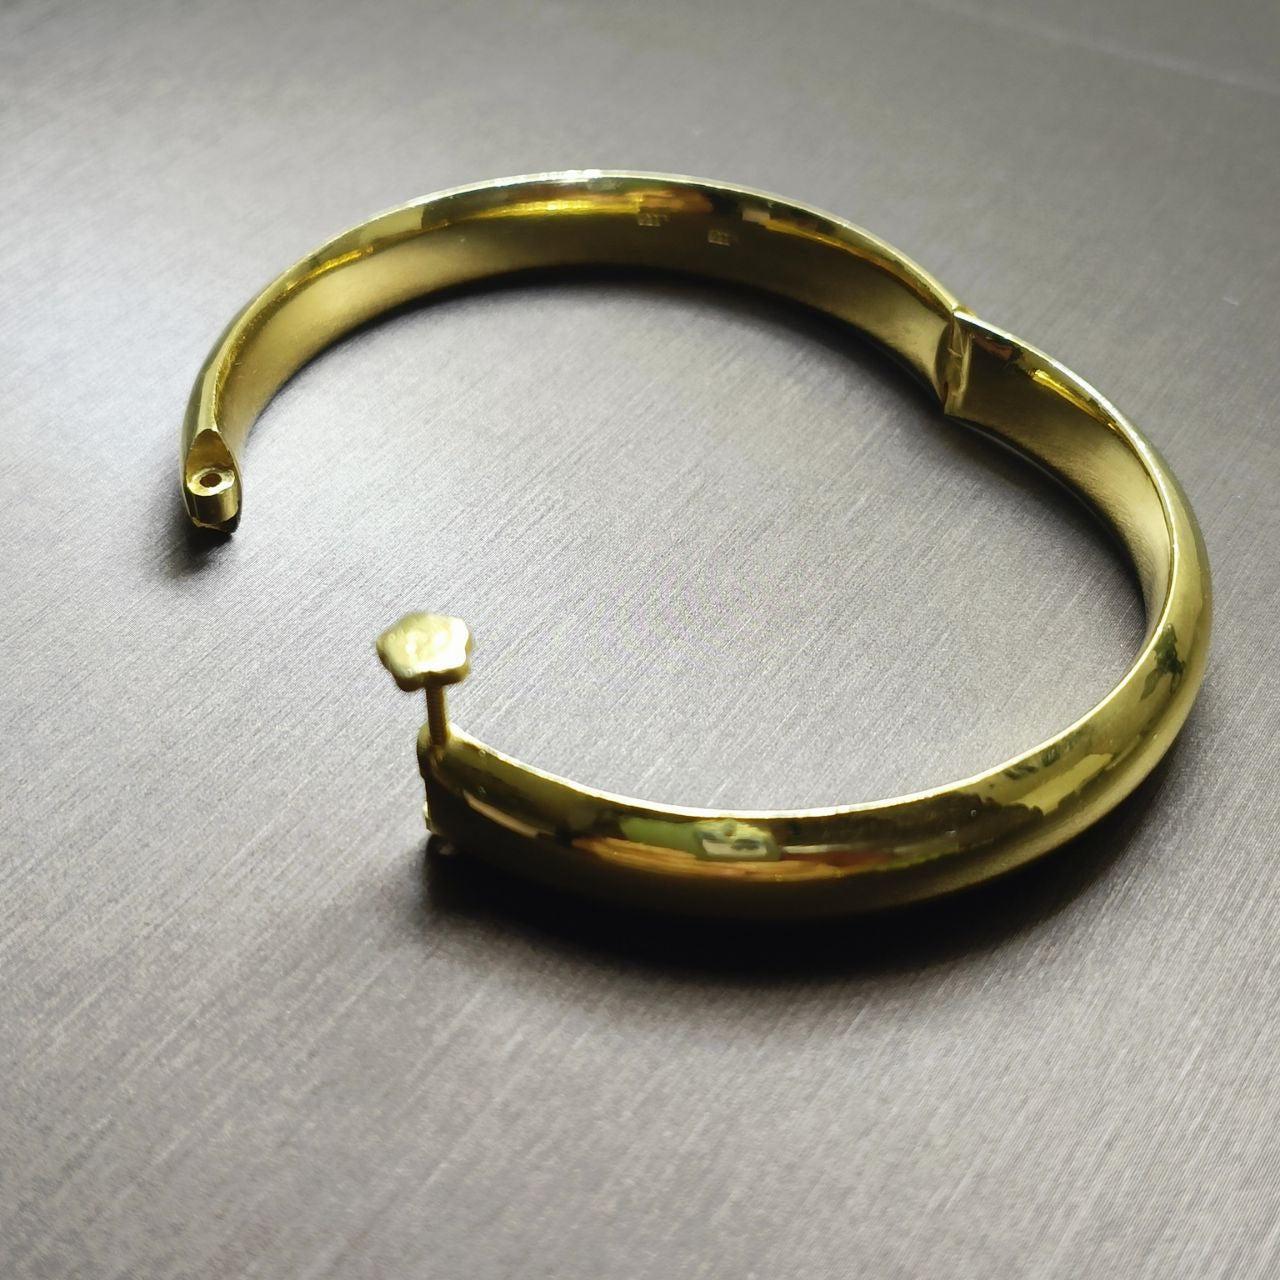 22K / 916 Gold Solid Simple Bangle-Bracelets-Best Gold Shop